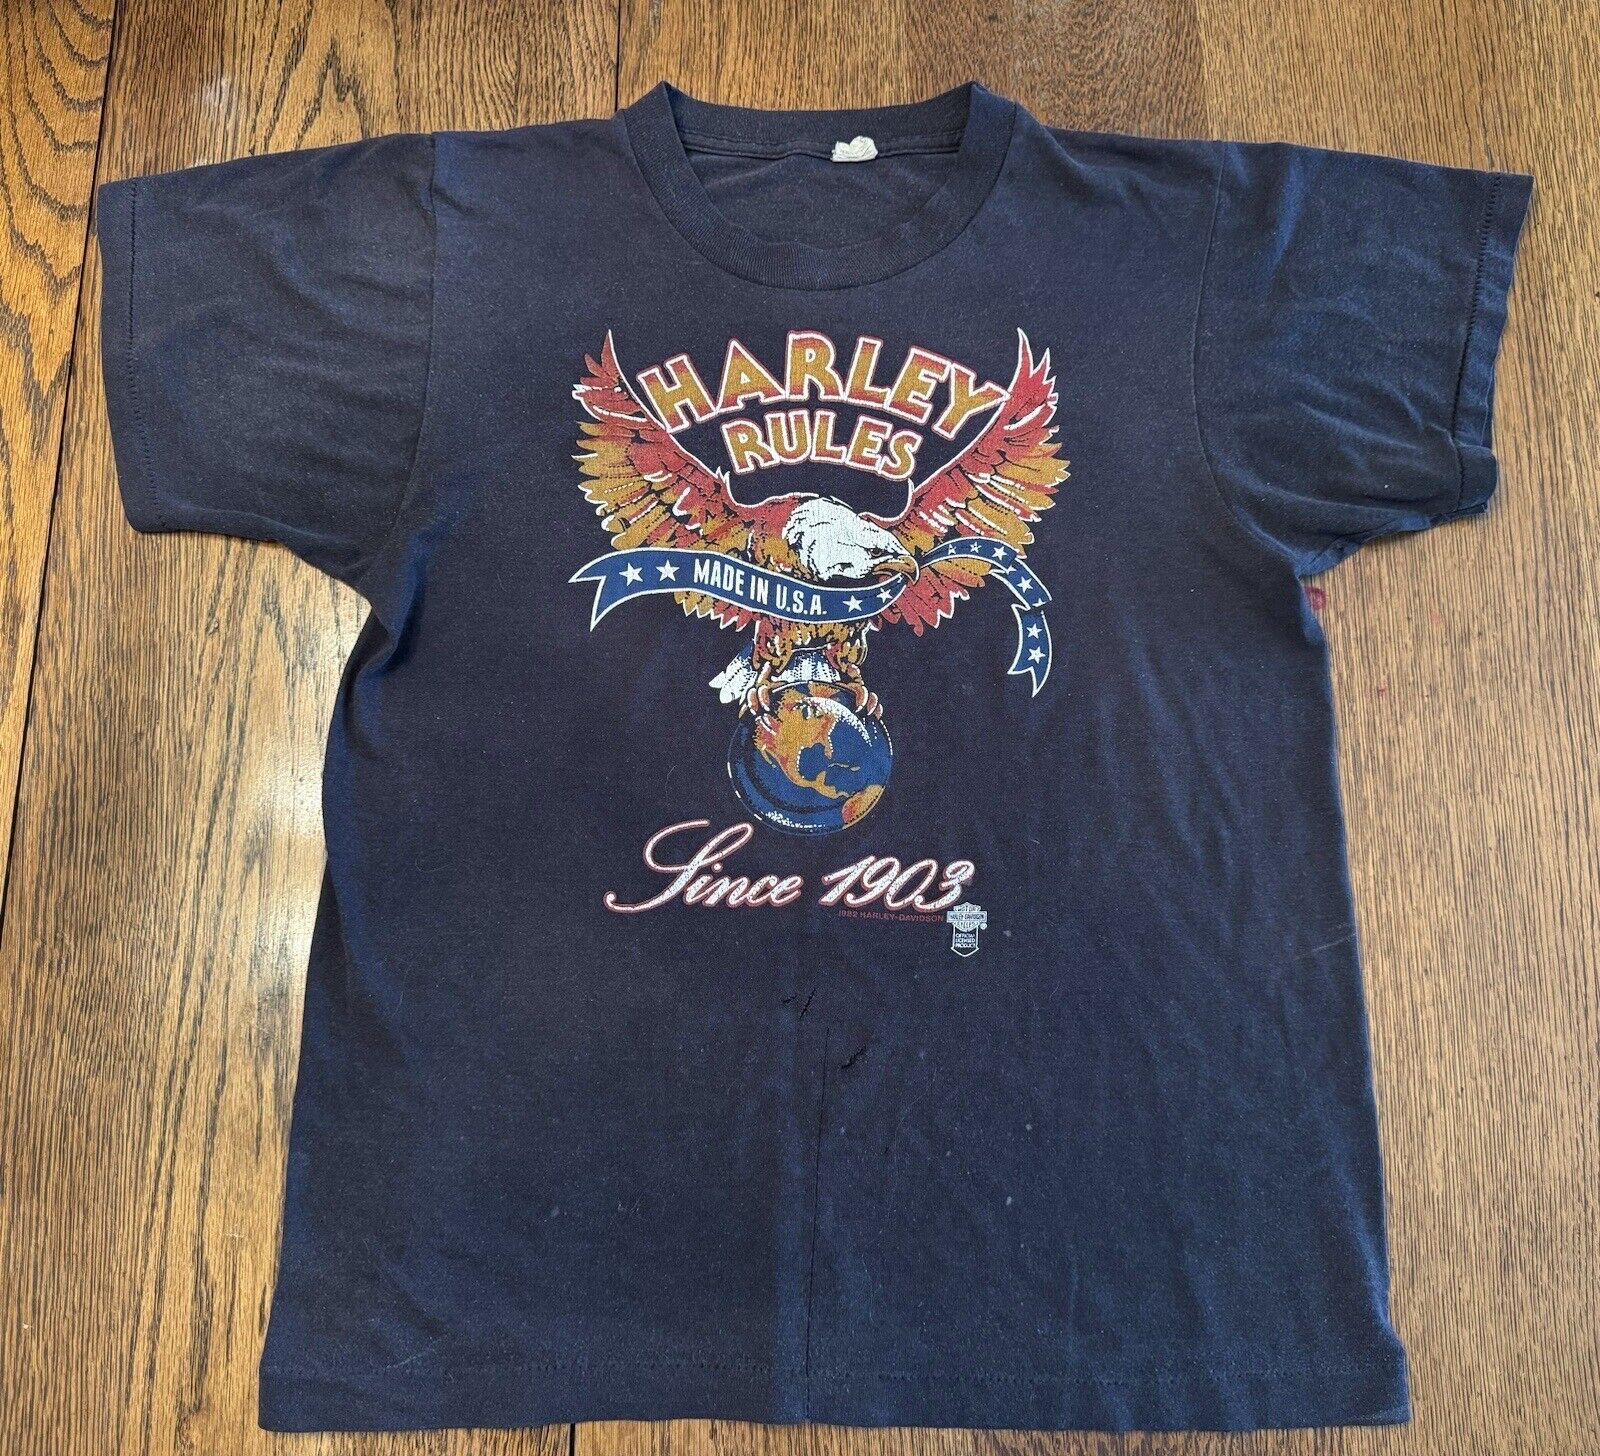 *Rare Vintage ‘86 Daytona Bike Week Harley Davidson Shirt - Authentic